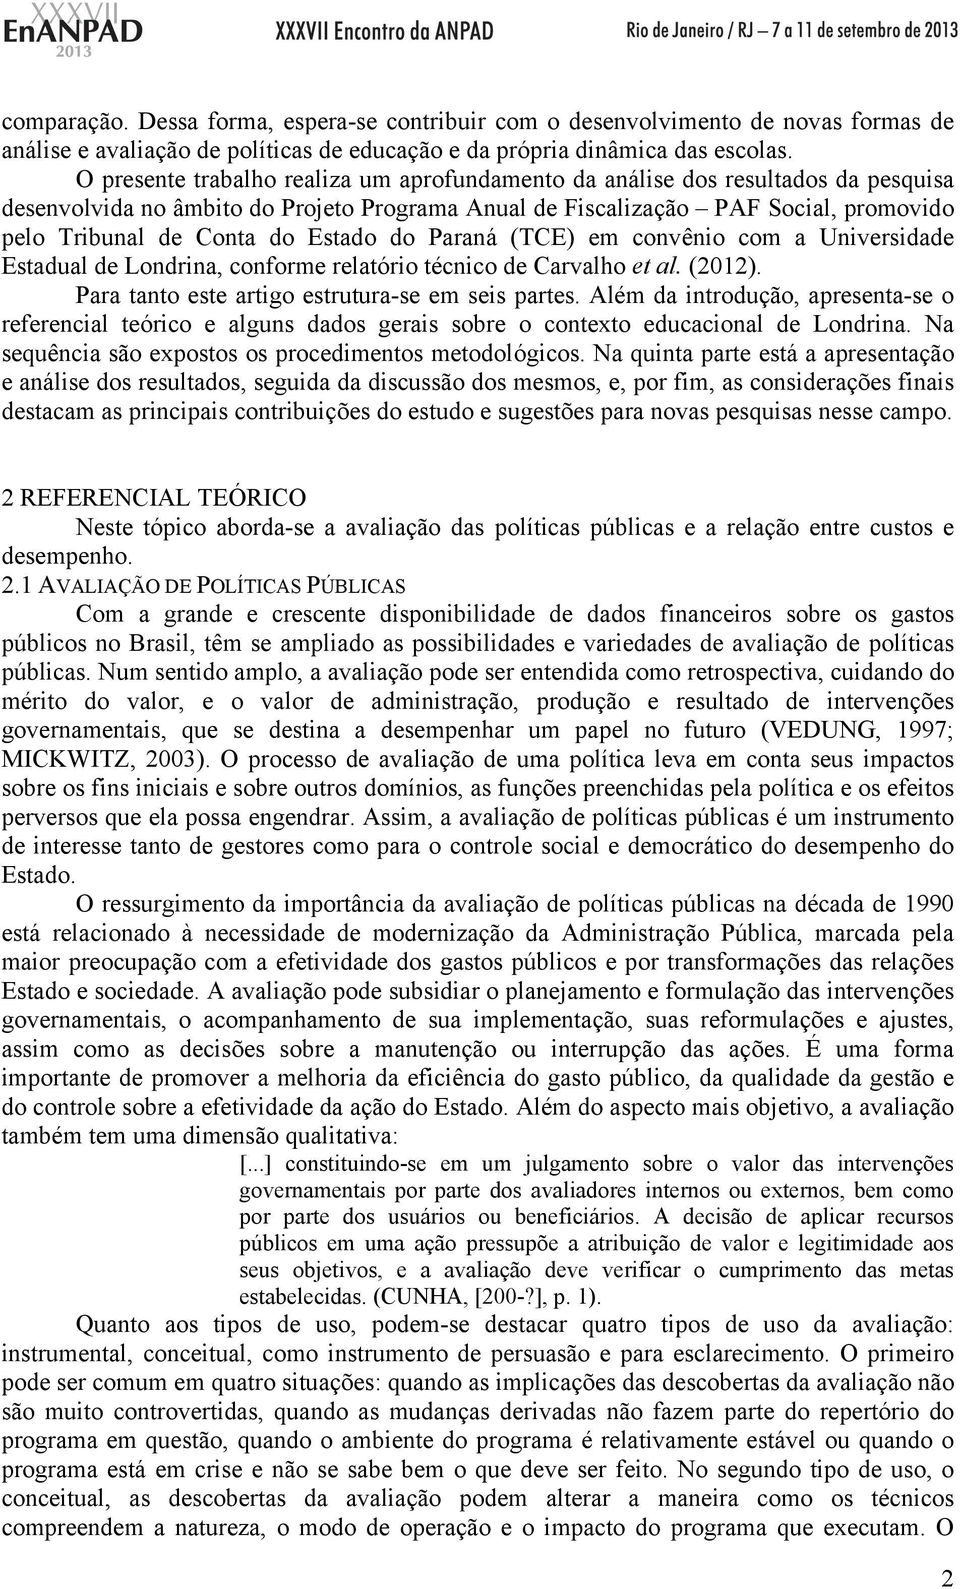 Estado do Paraná (TCE) em convênio com a Universidade Estadual de Londrina, conforme relatório técnico de Carvalho et al. (2012). Para tanto este artigo estrutura-se em seis partes.